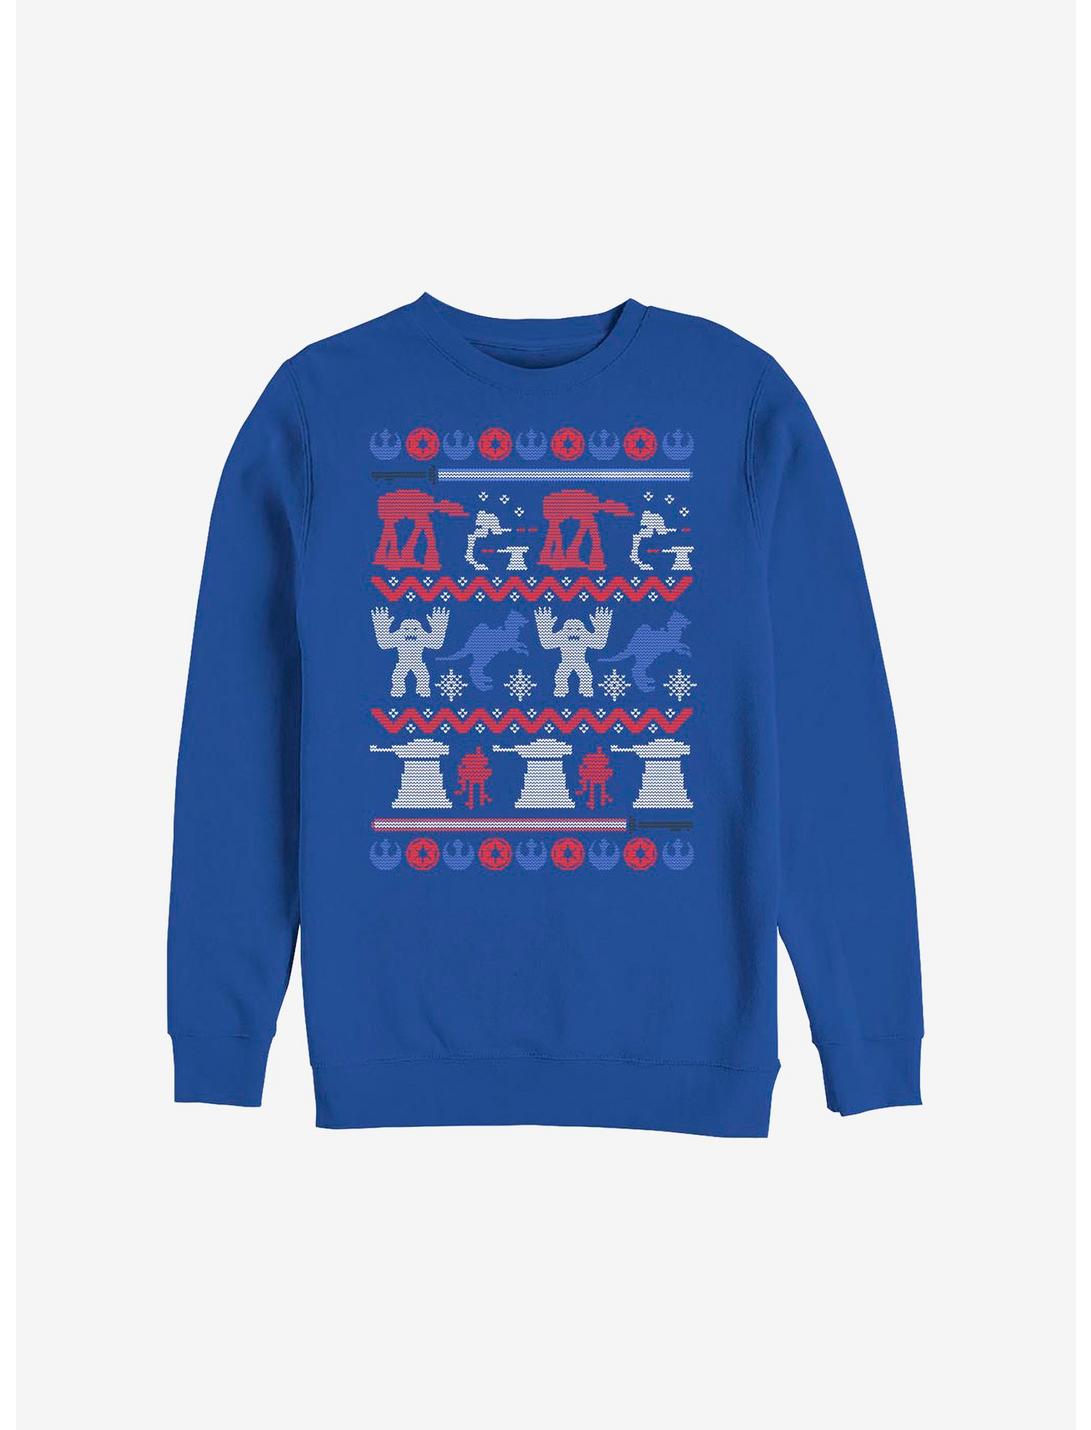 Star Wars Hoth Ugly Christmas Sweater Sweatshirt, ROYAL, hi-res